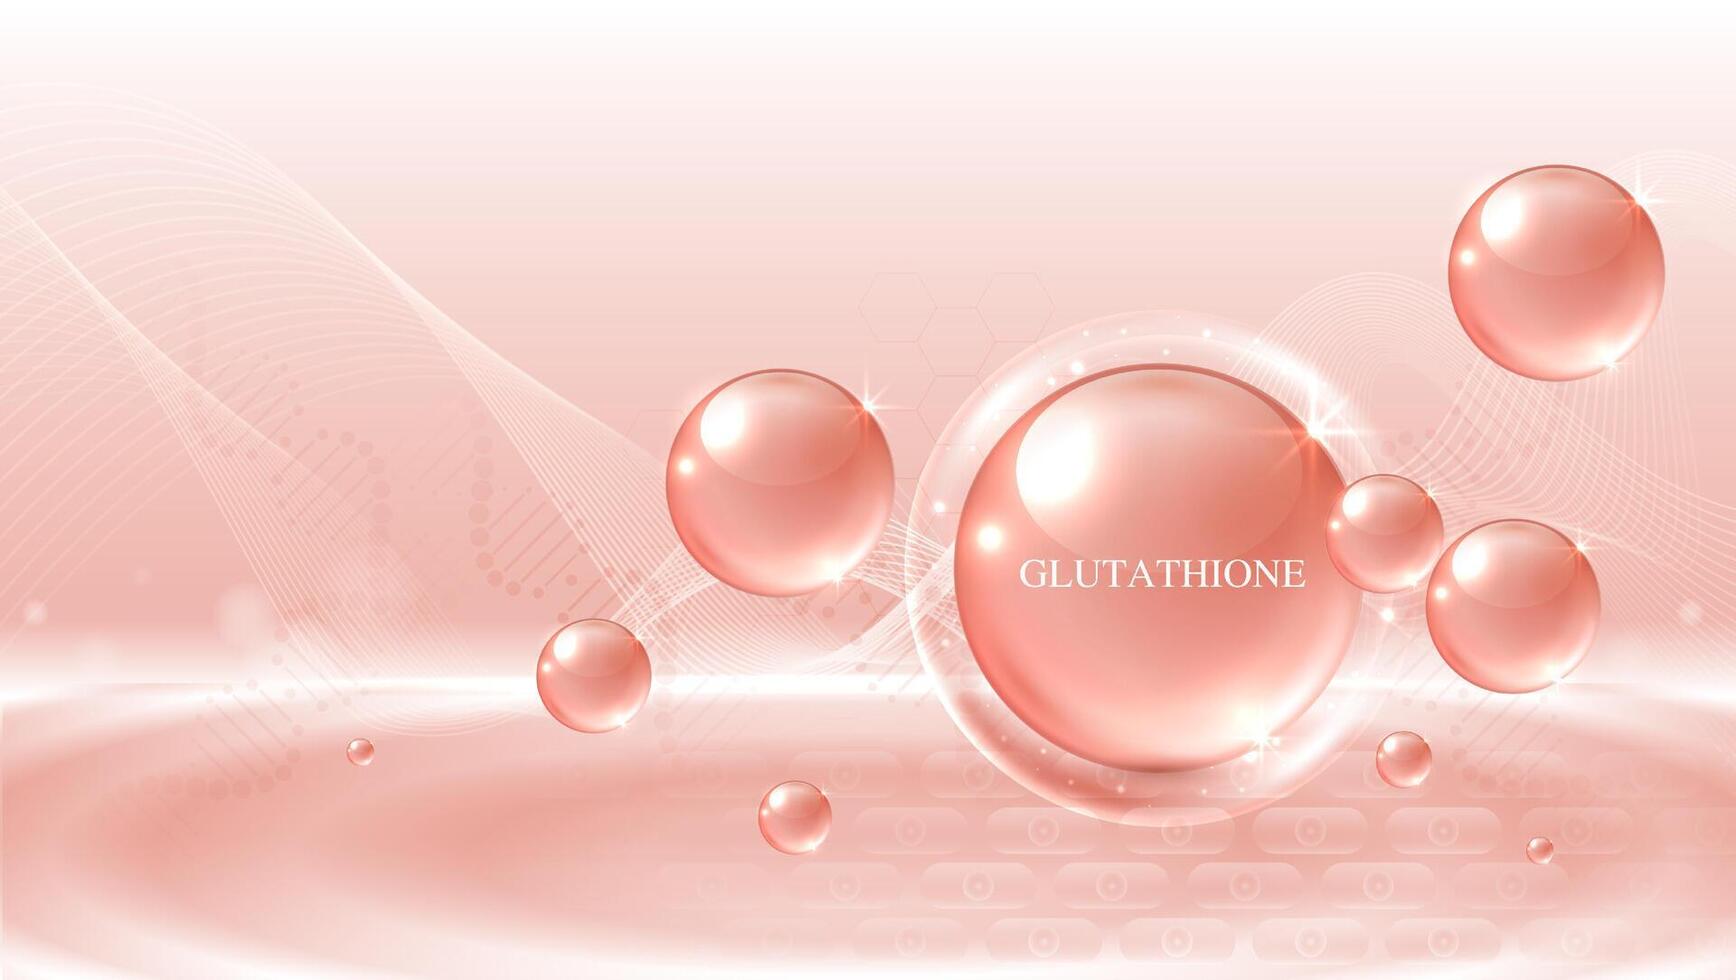 glutathion serum druppels over- roze huid cellen met kunstmatig reclame. gezond leven medisch en dieet supplement. natuurlijk huid zorg kunstmatig stimuleren collageen. ontwerp. vector